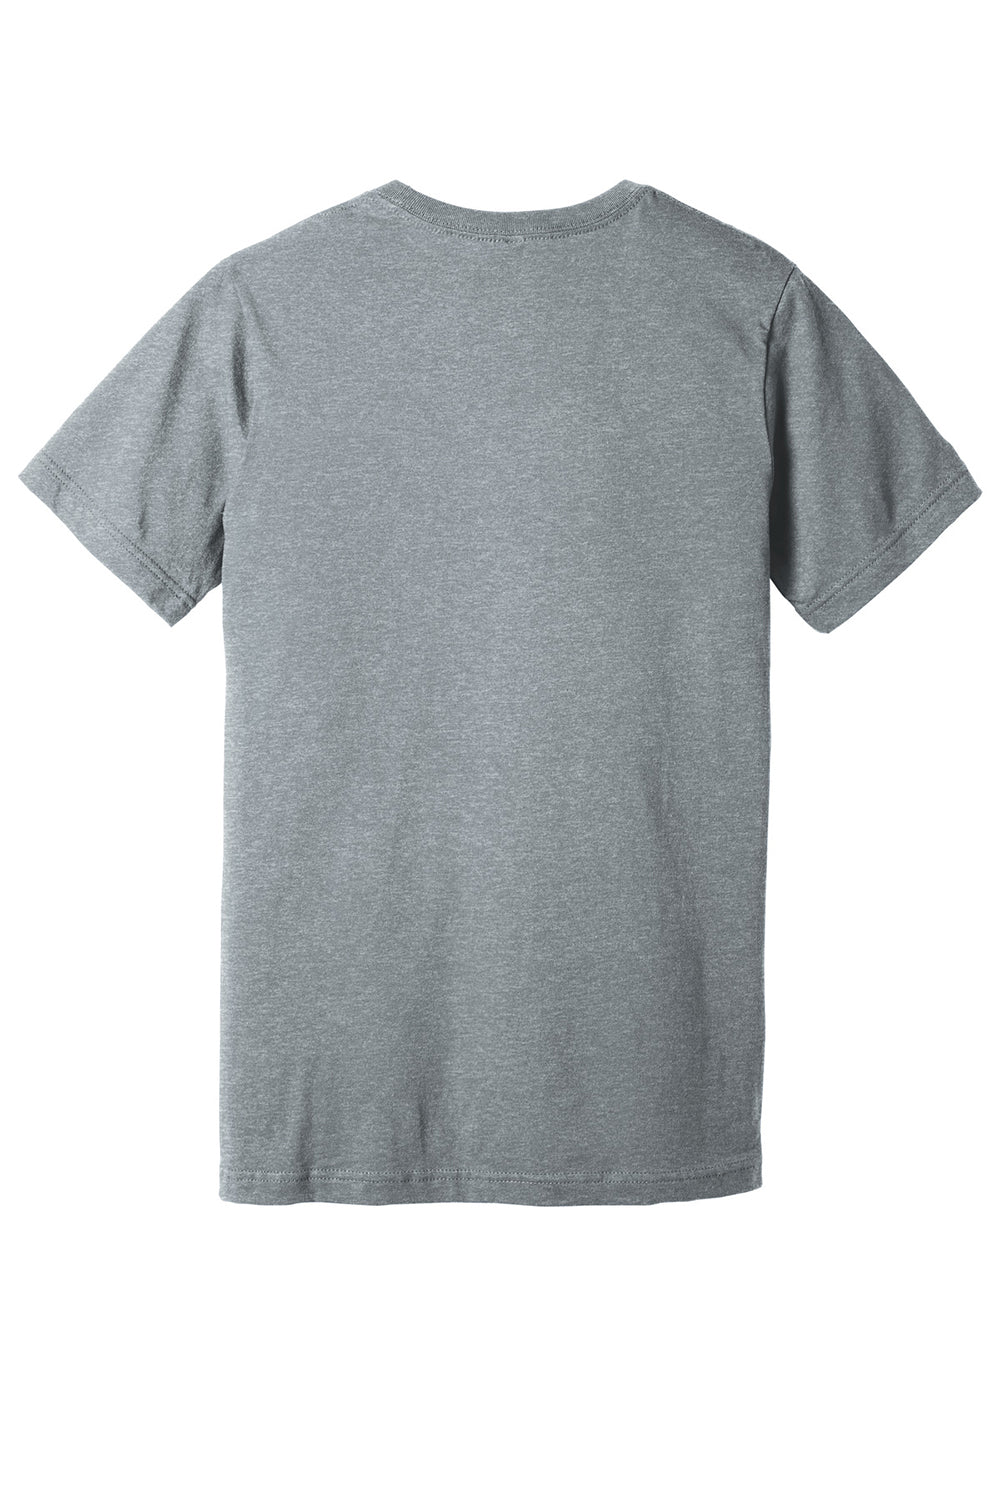 Bella + Canvas BC3005CVC Mens CVC Short Sleeve V-Neck T-Shirt Heather Grey Flat Back